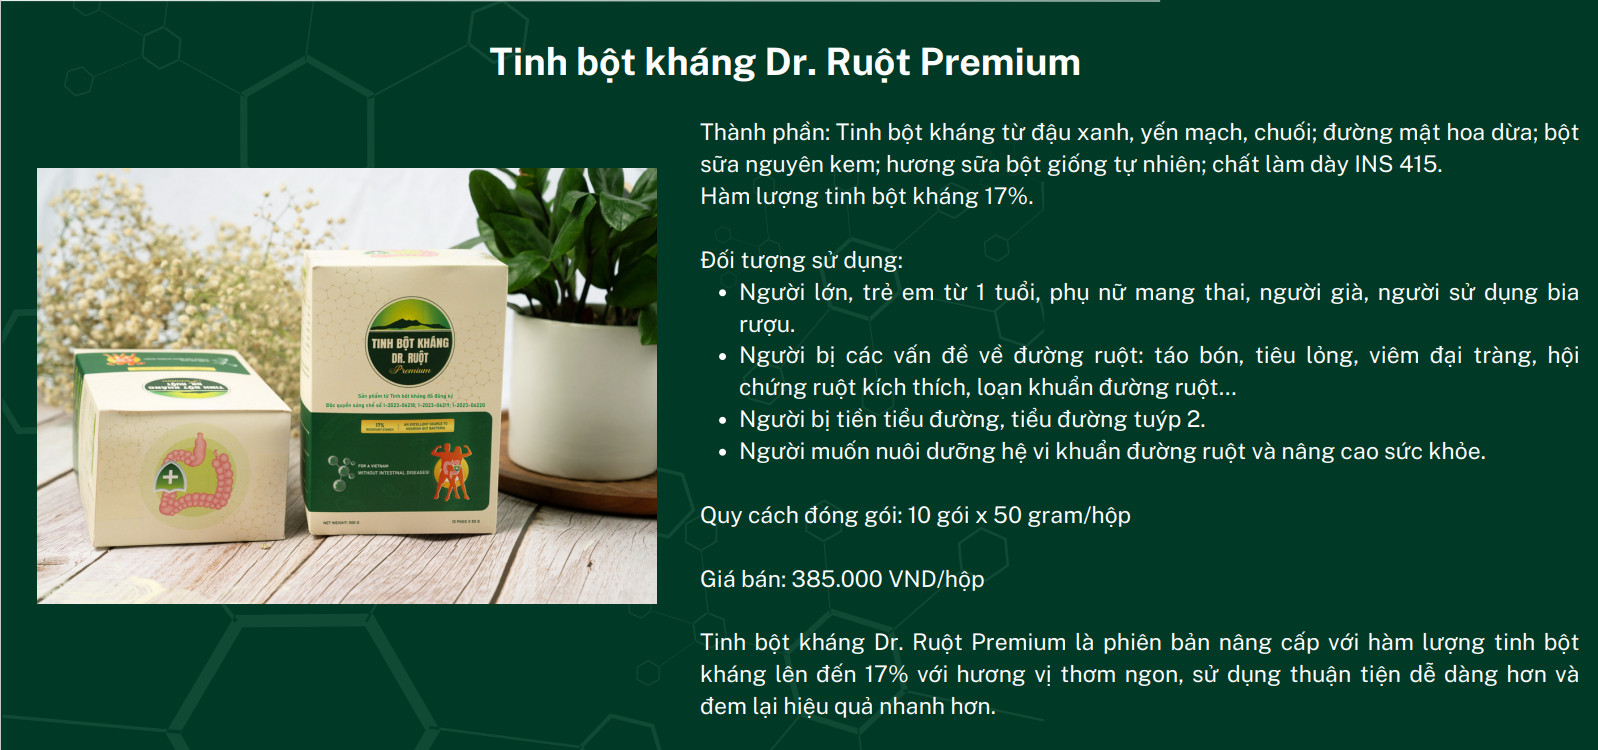 Mô tả công dụng sản phẩm tinh bột kháng Dr. Ruột Premium 17%